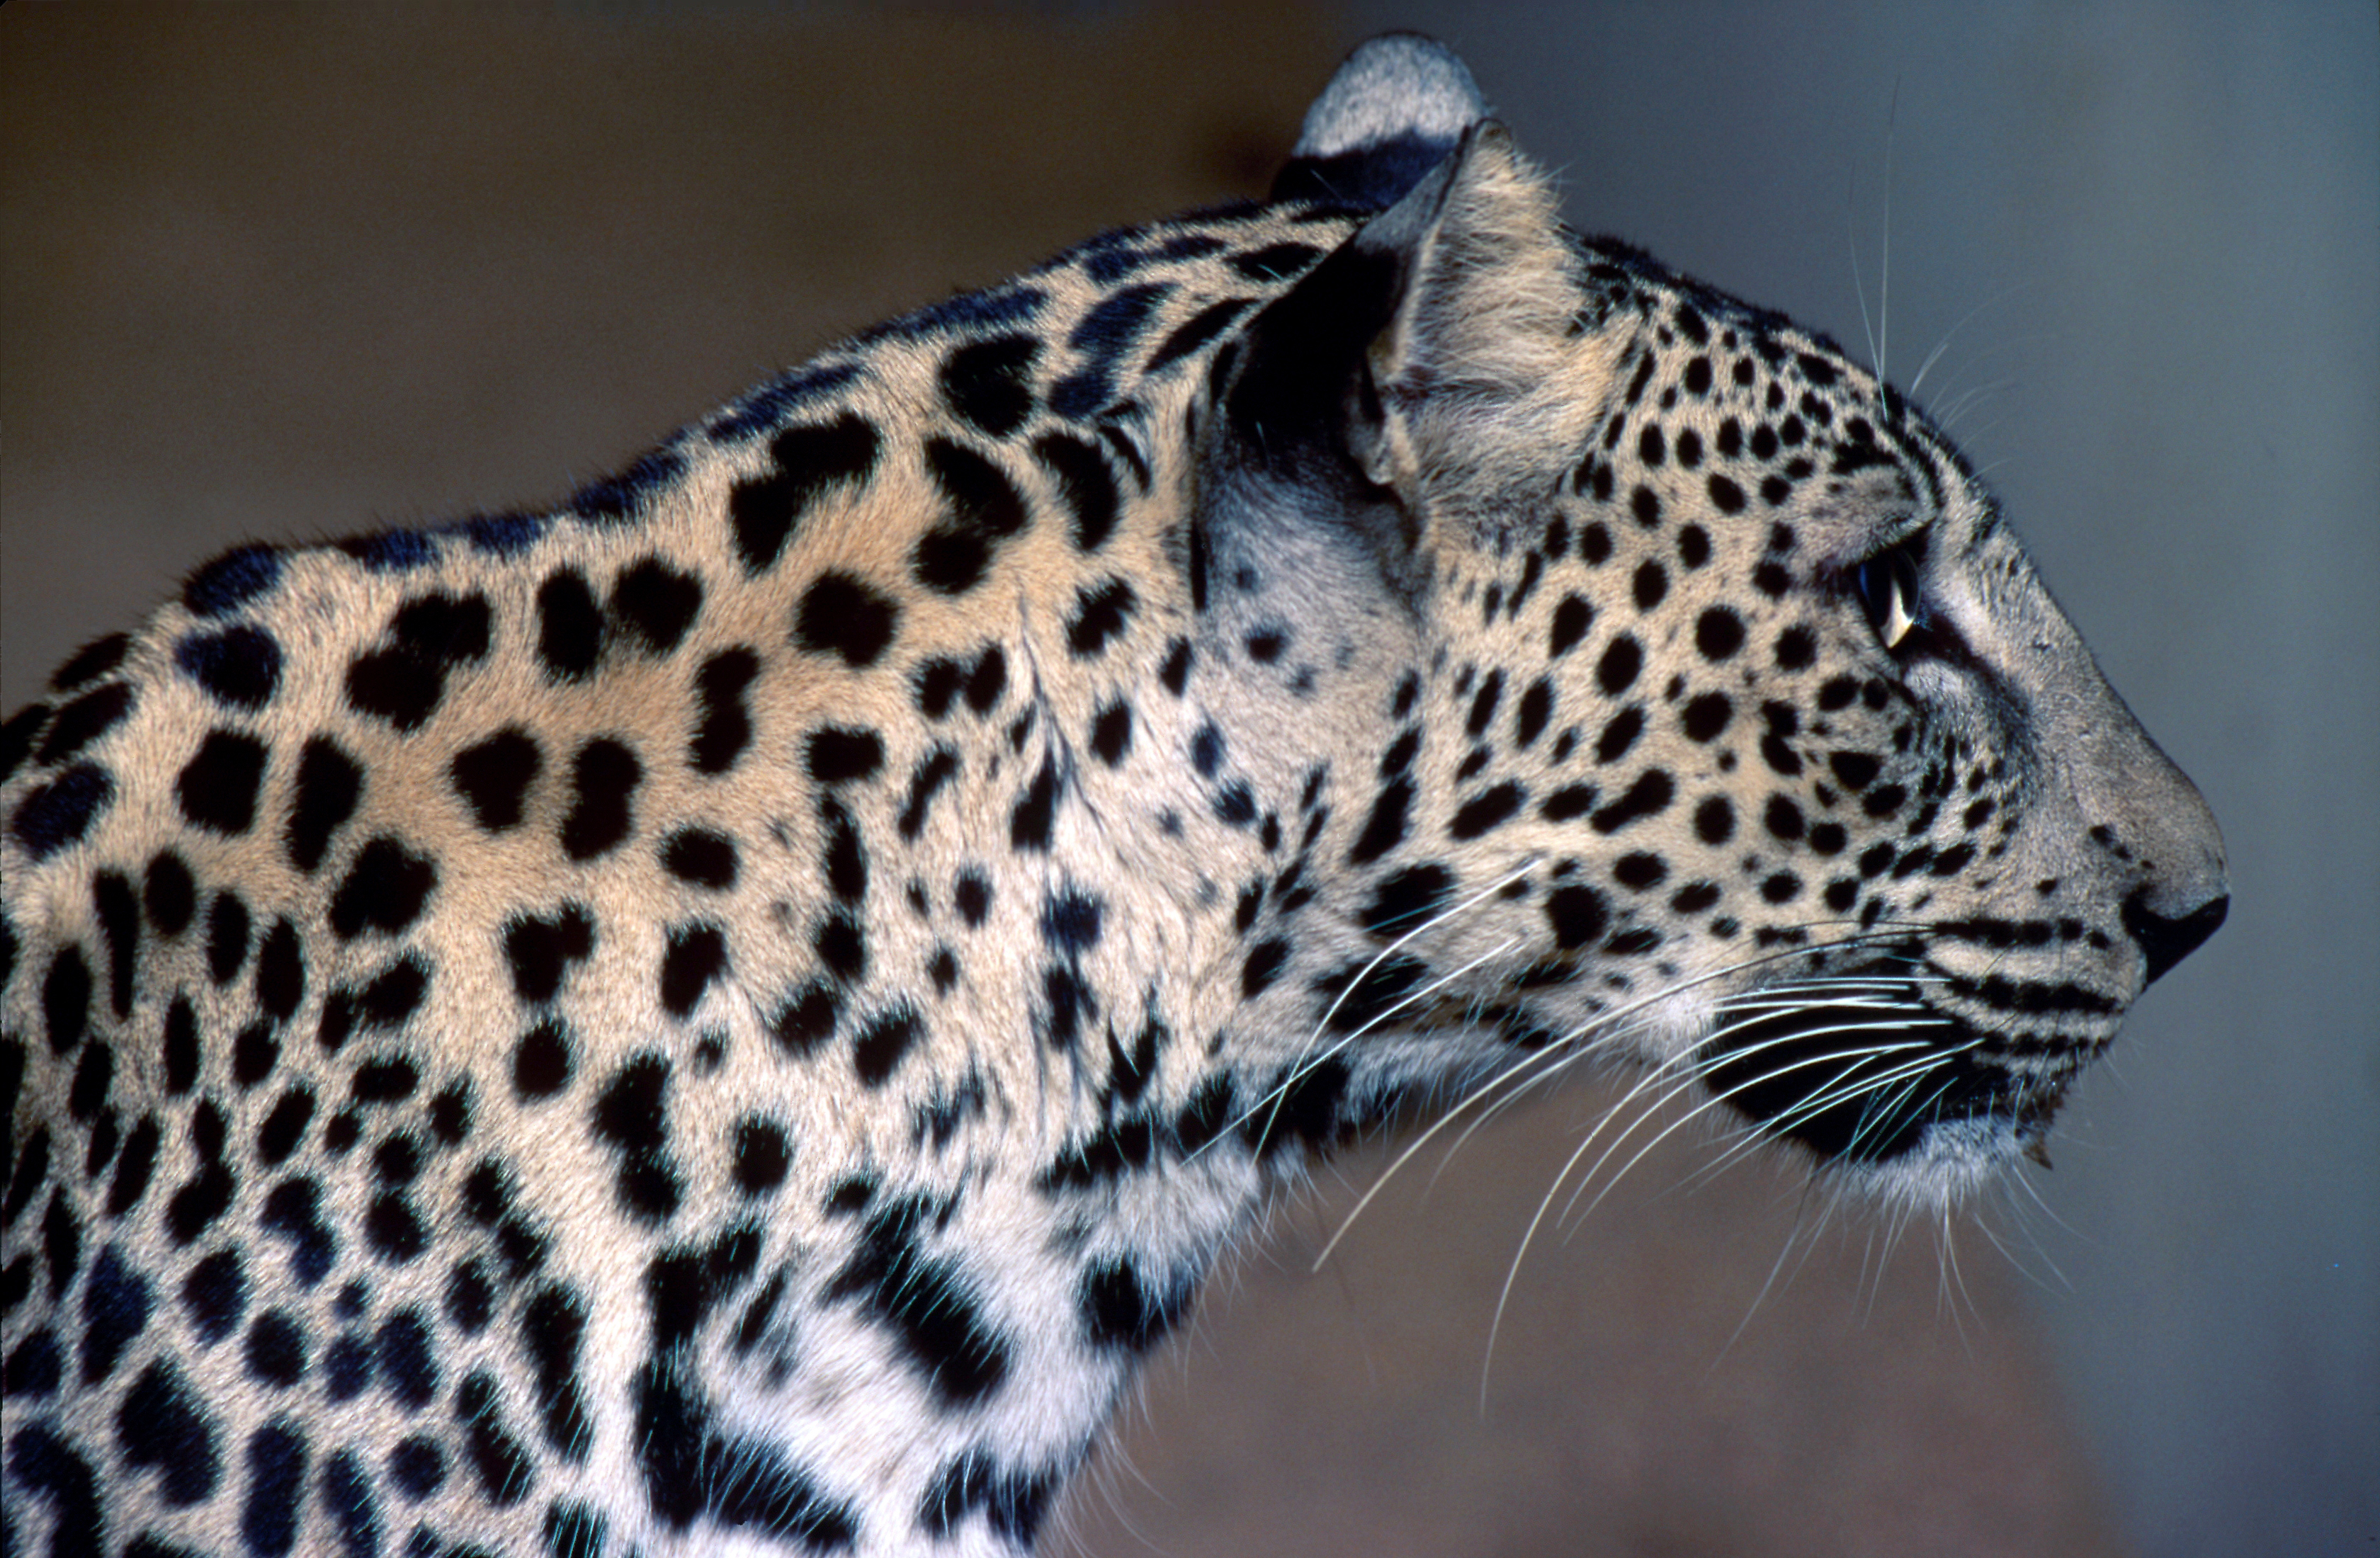 "Side profile of leopard"